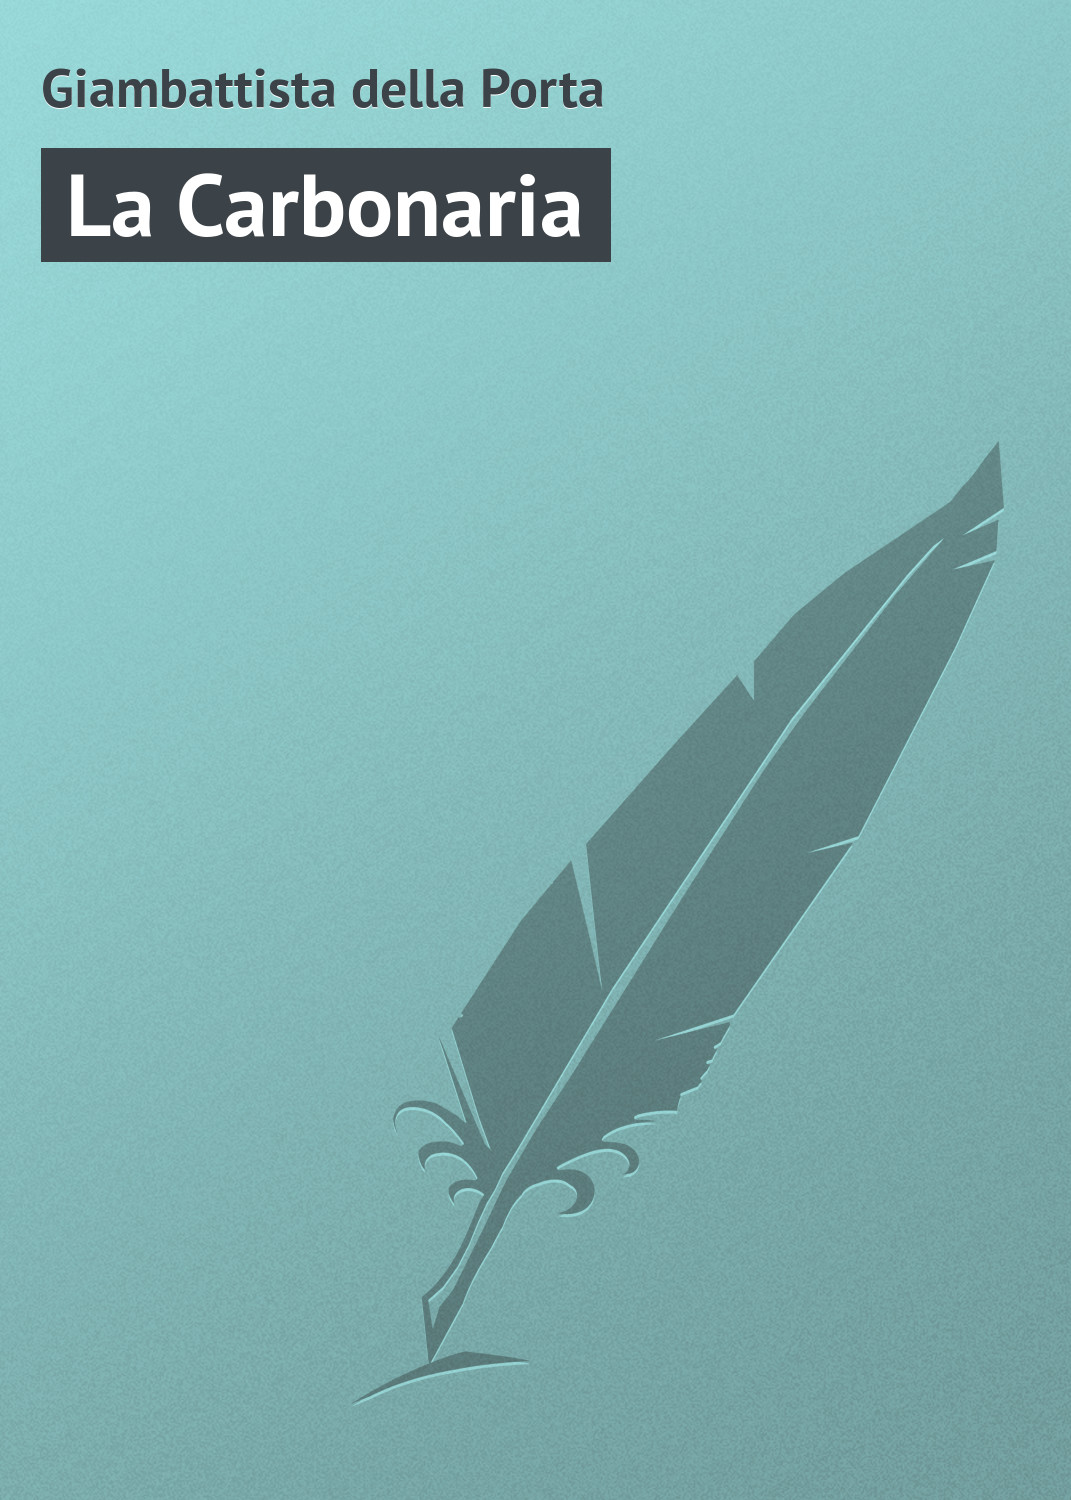 Книга La Carbonaria из серии , созданная Giambattista della, может относится к жанру Зарубежная старинная литература, Зарубежная классика. Стоимость электронной книги La Carbonaria с идентификатором 21103814 составляет 5.99 руб.